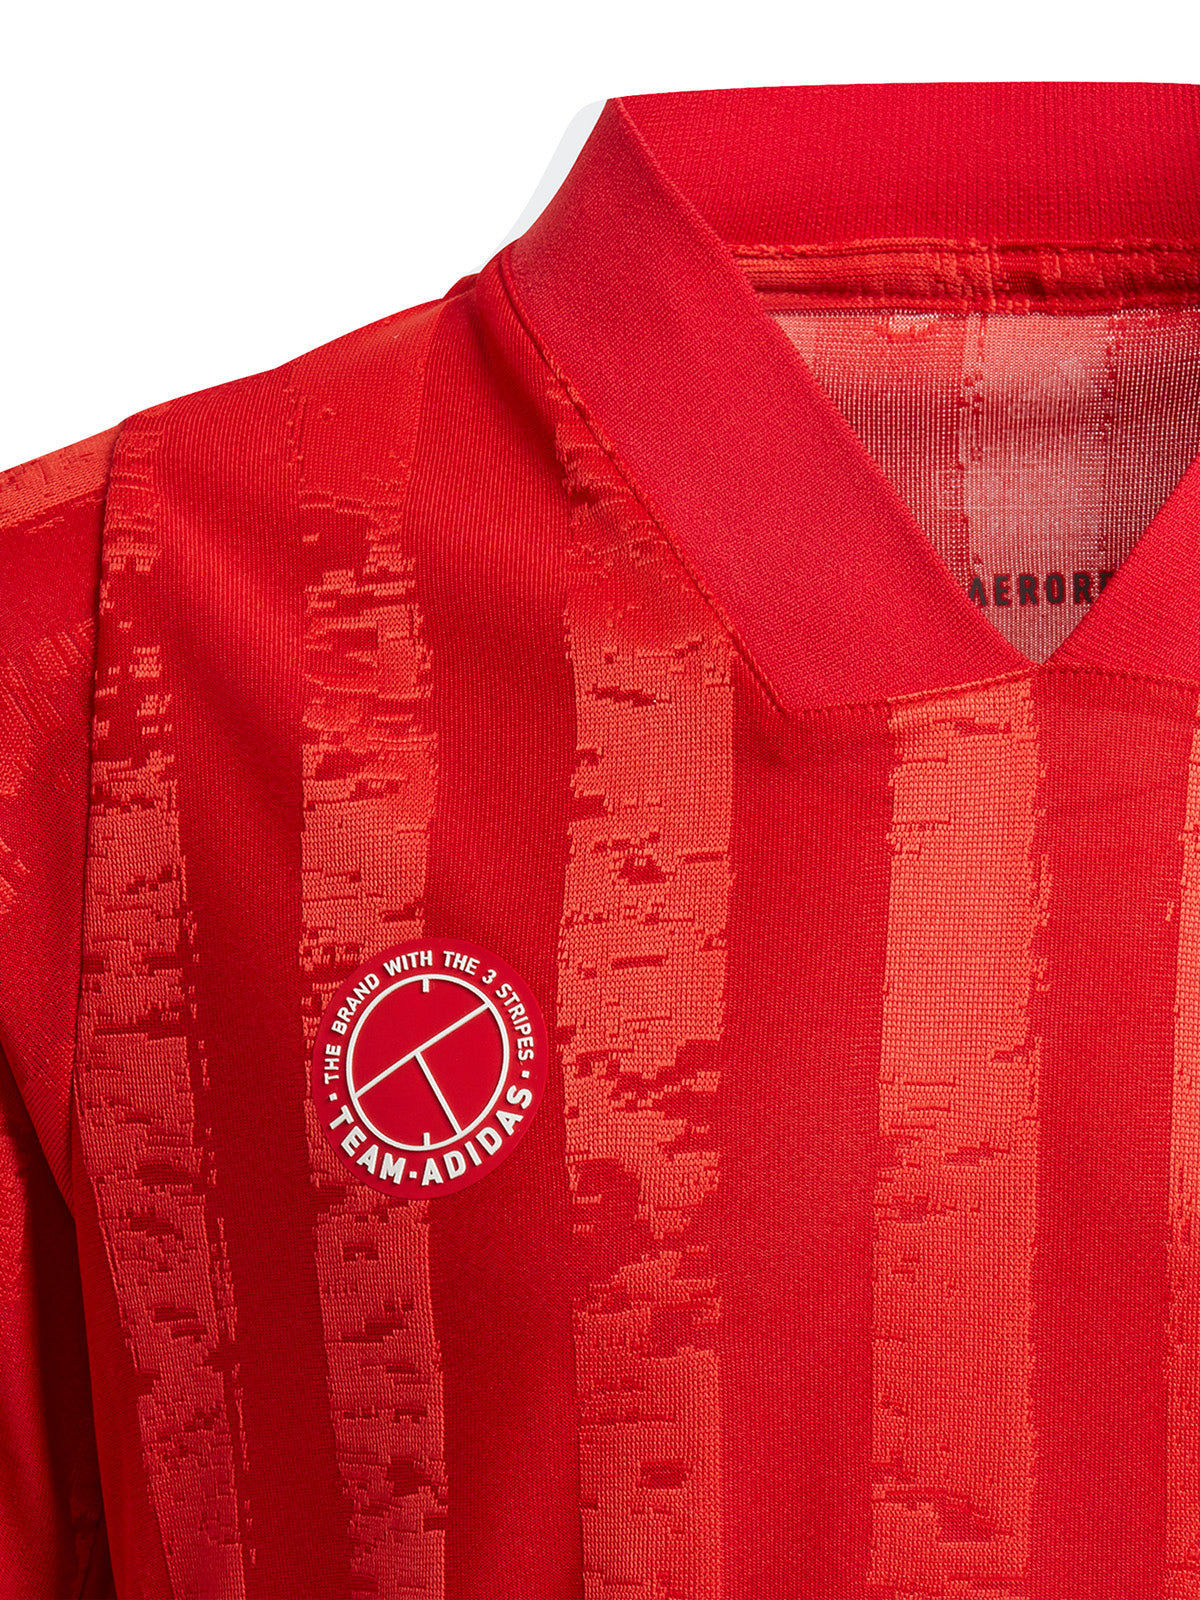 Magliette Ragazzo Adidas - Boys Freelift Tennis T-Shirt - Rosso